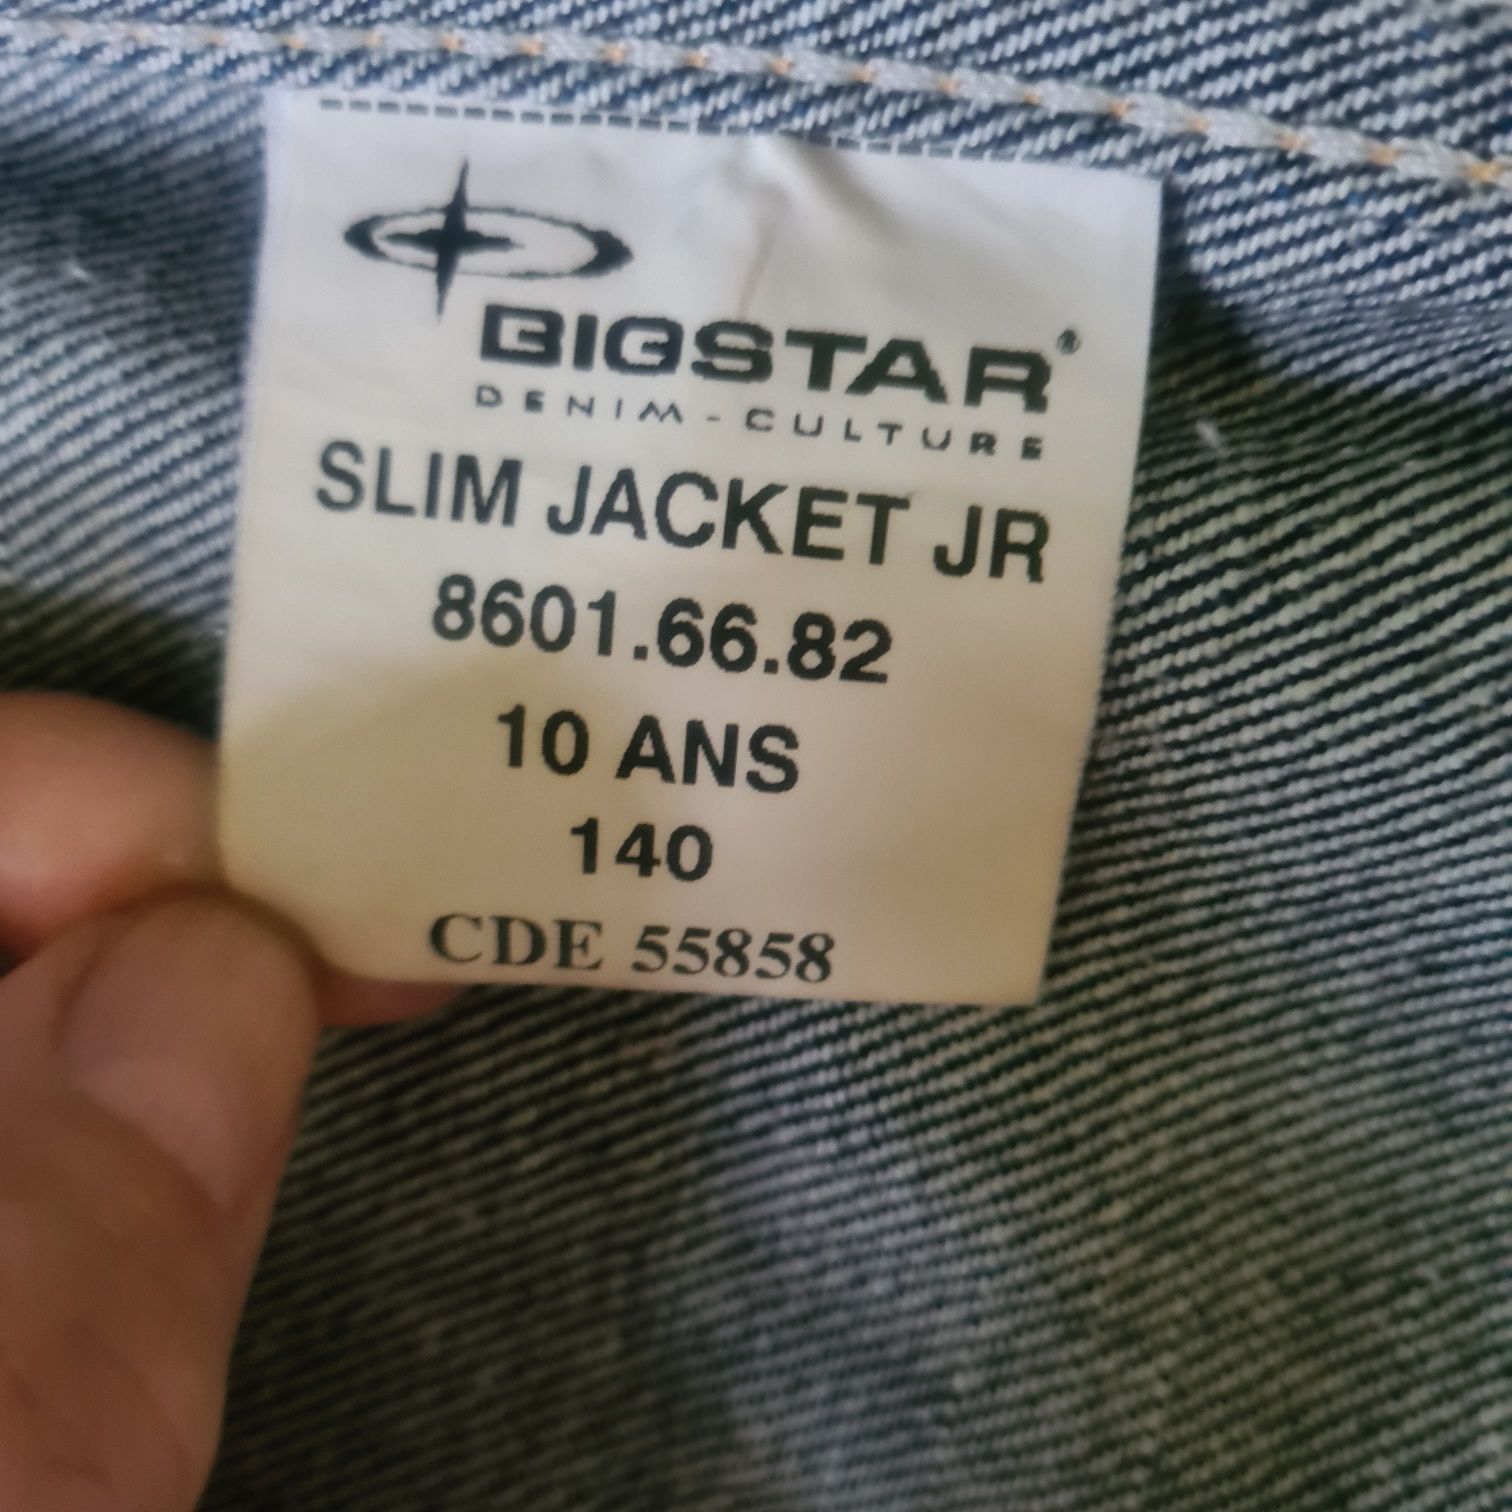 Sprzedam kurtke jeansową BigStar rozm 140